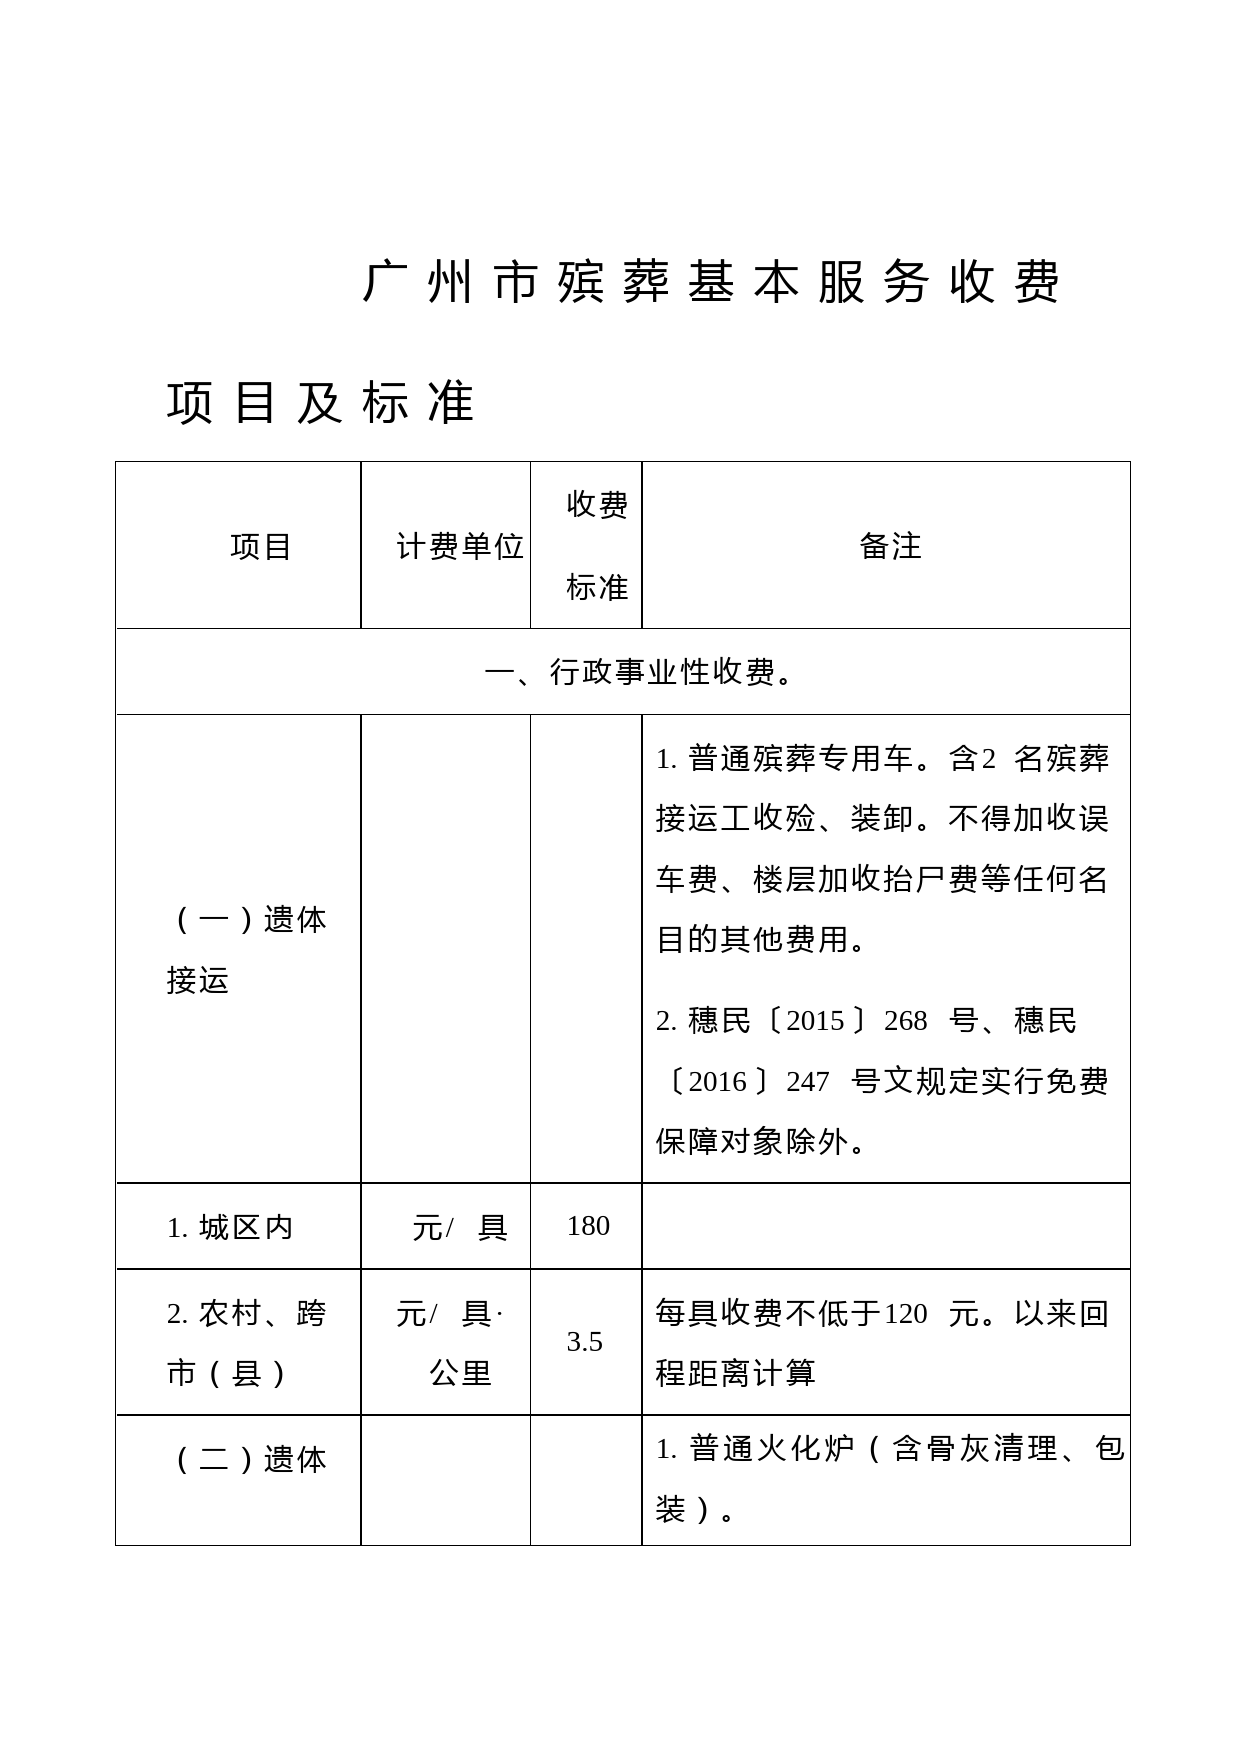 广州殡葬基本服务收费项目及标准